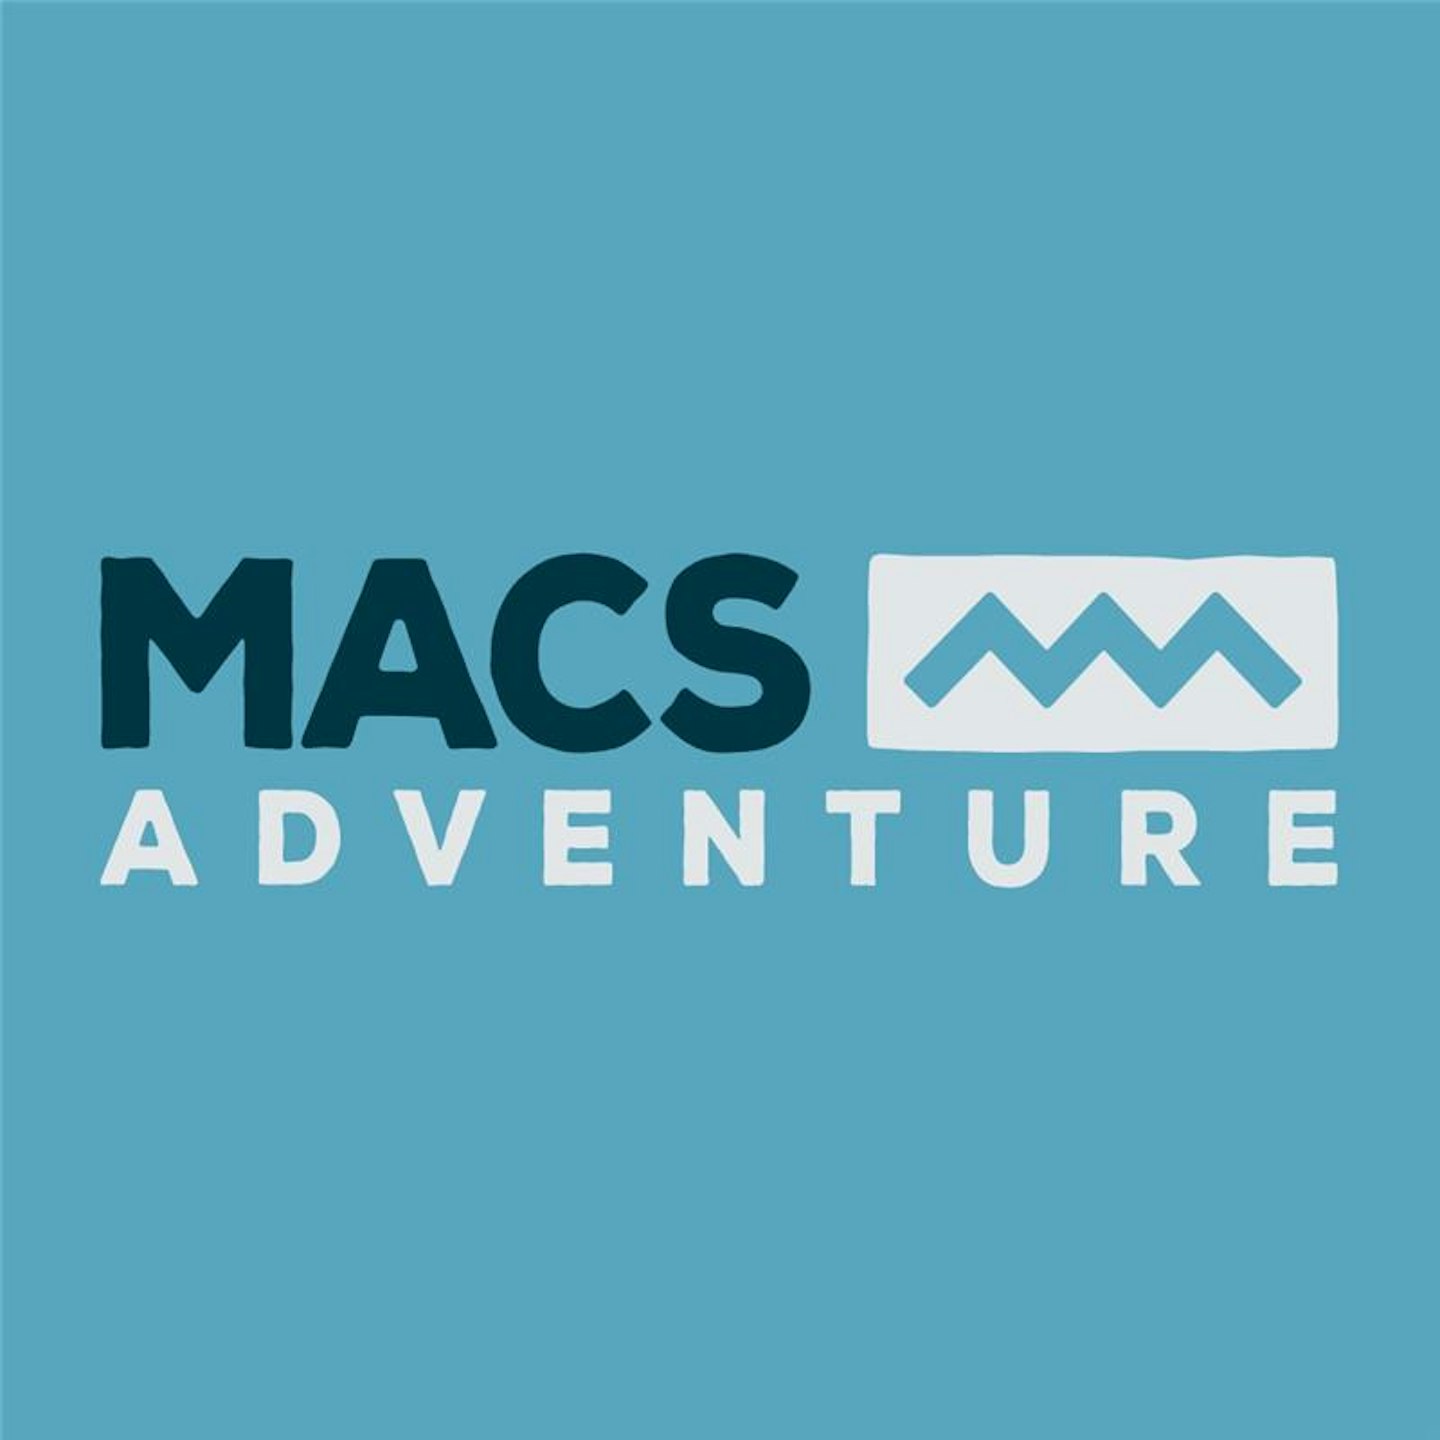 Macs Adventure logo